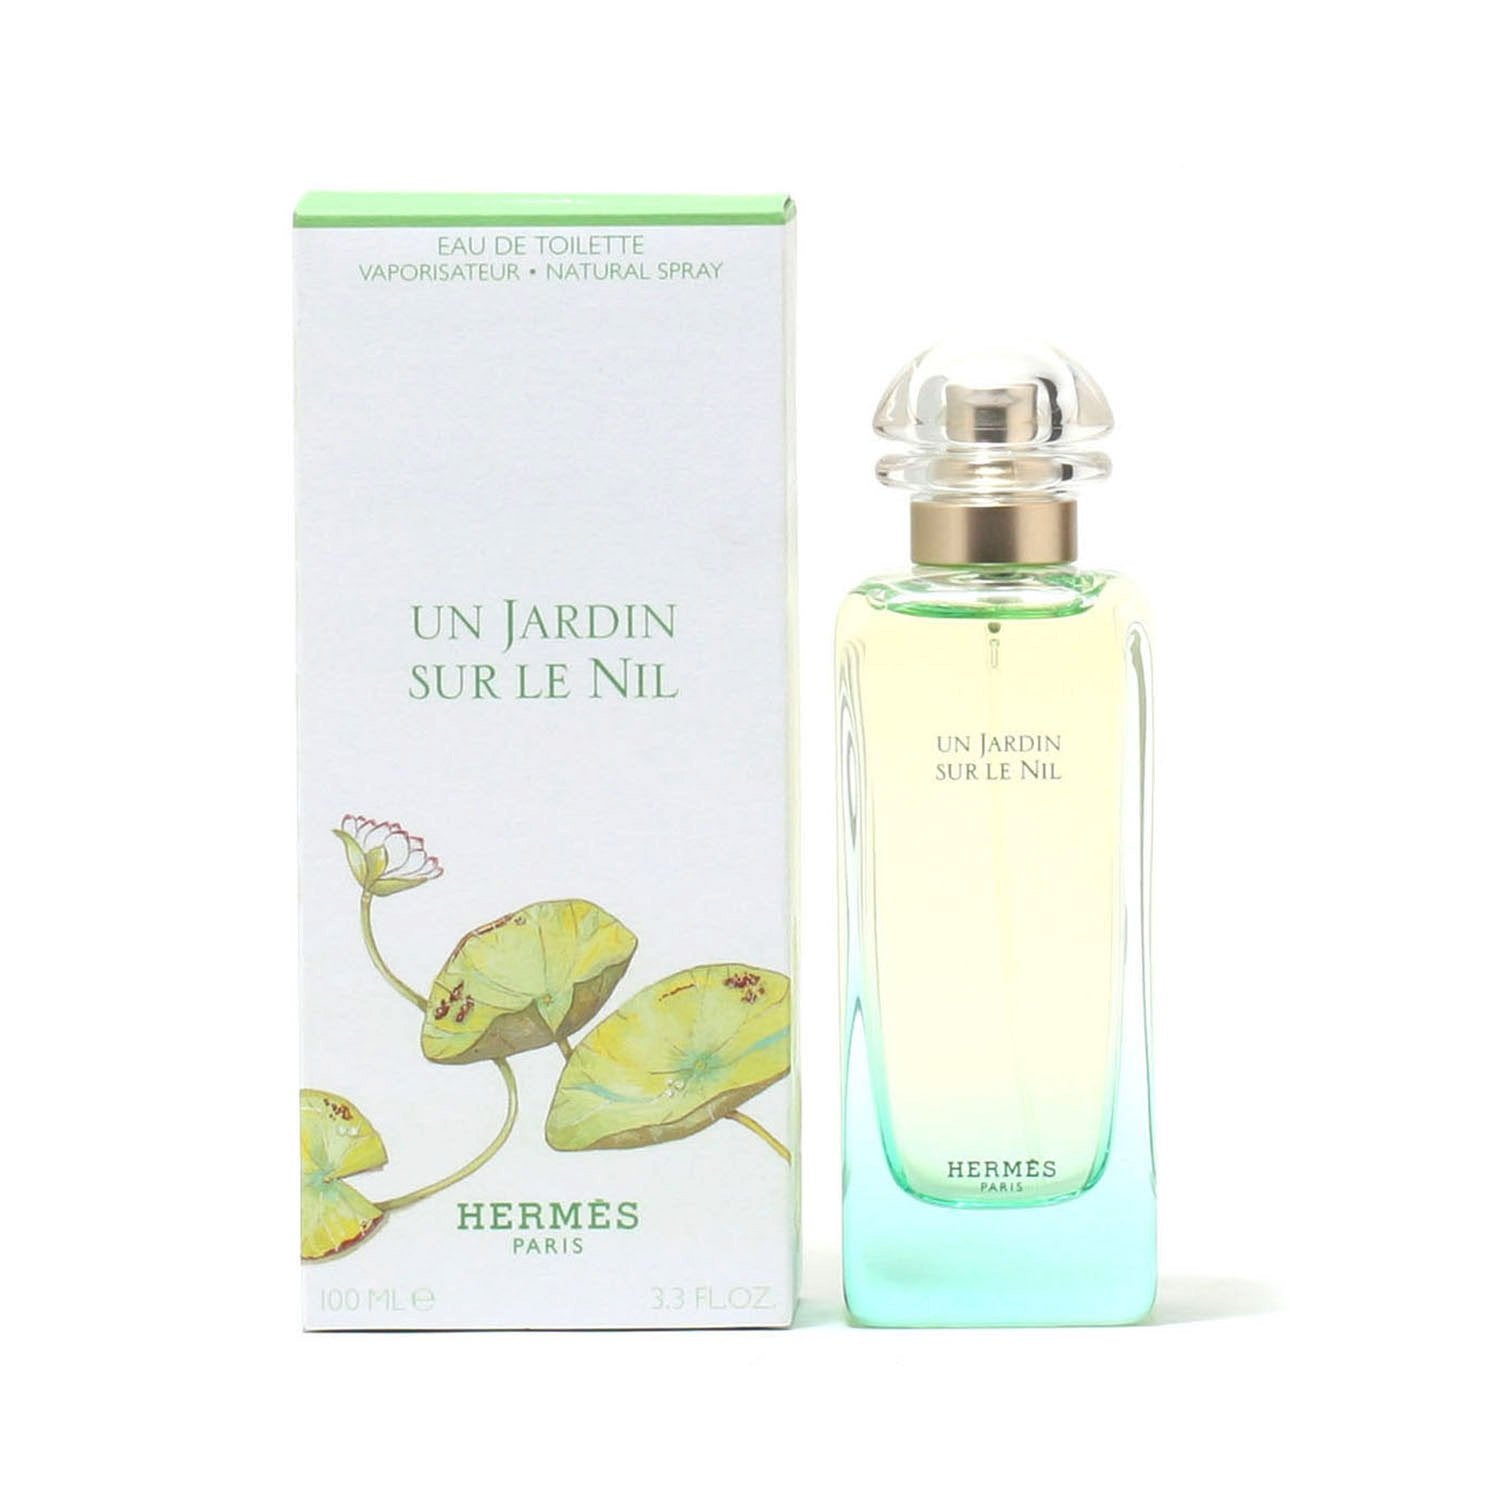 Perfume - HERMES UN JARDIN SUR LE NIL FOR WOMEN - EAU DE TOILETTE SPRAY